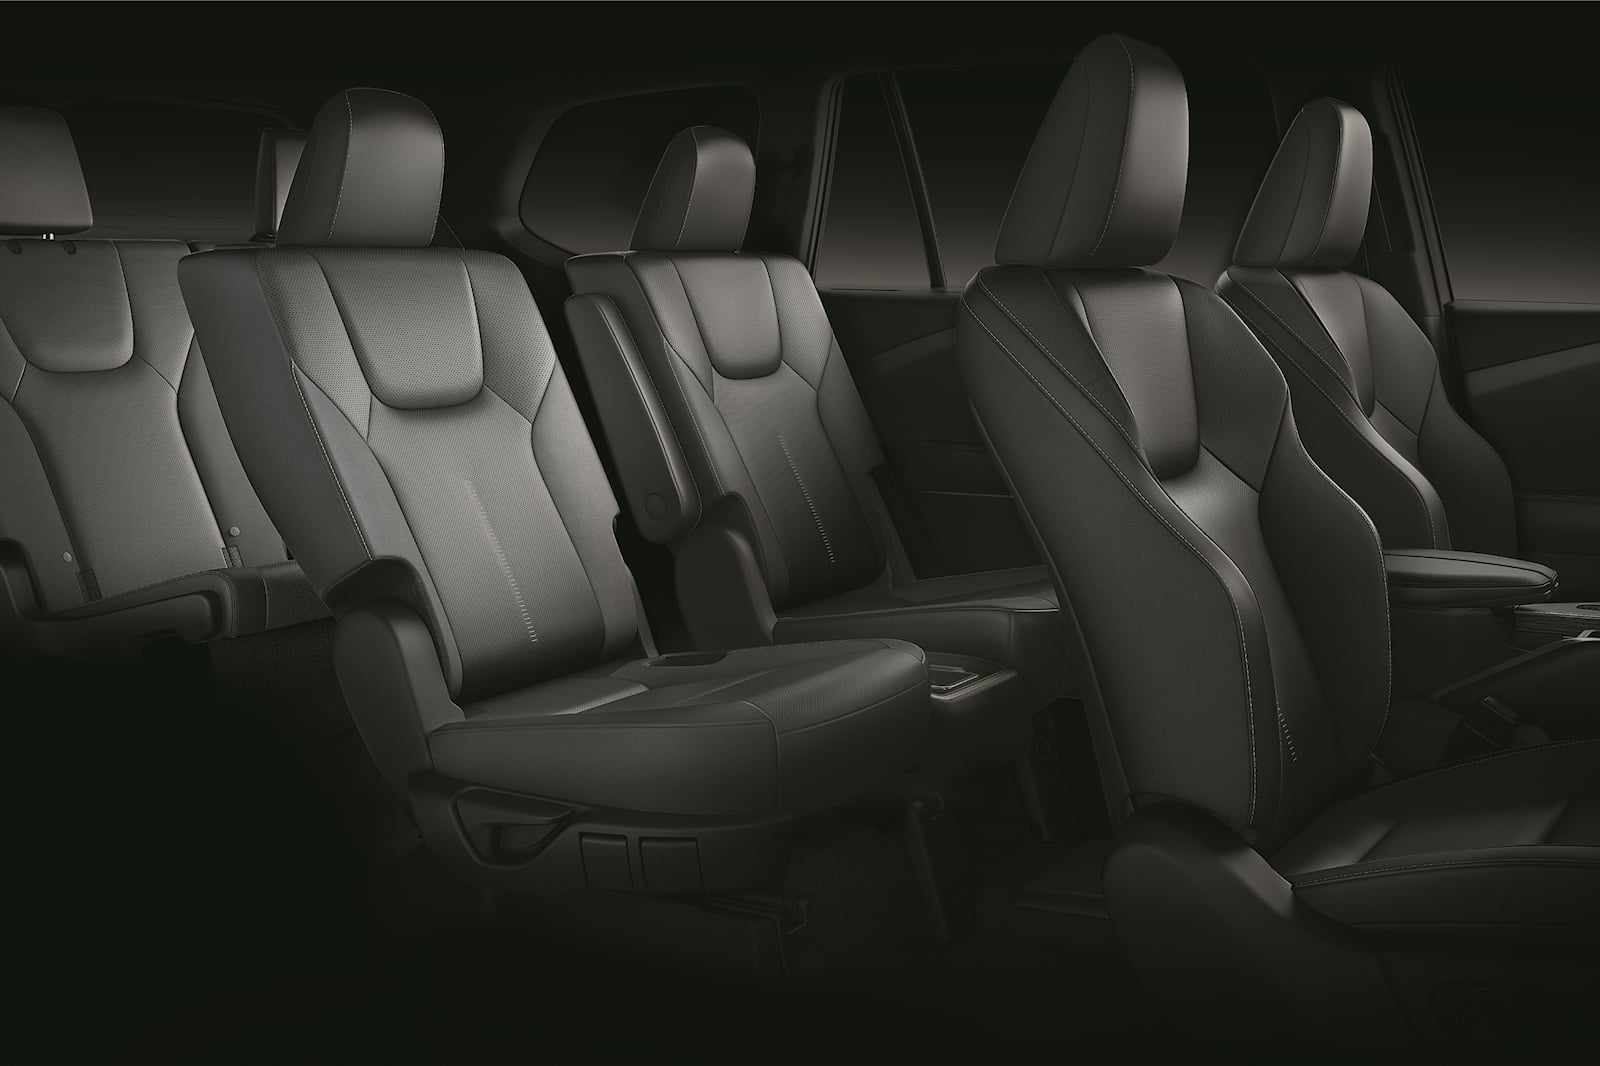 Lexus TX 500 interior - Seats